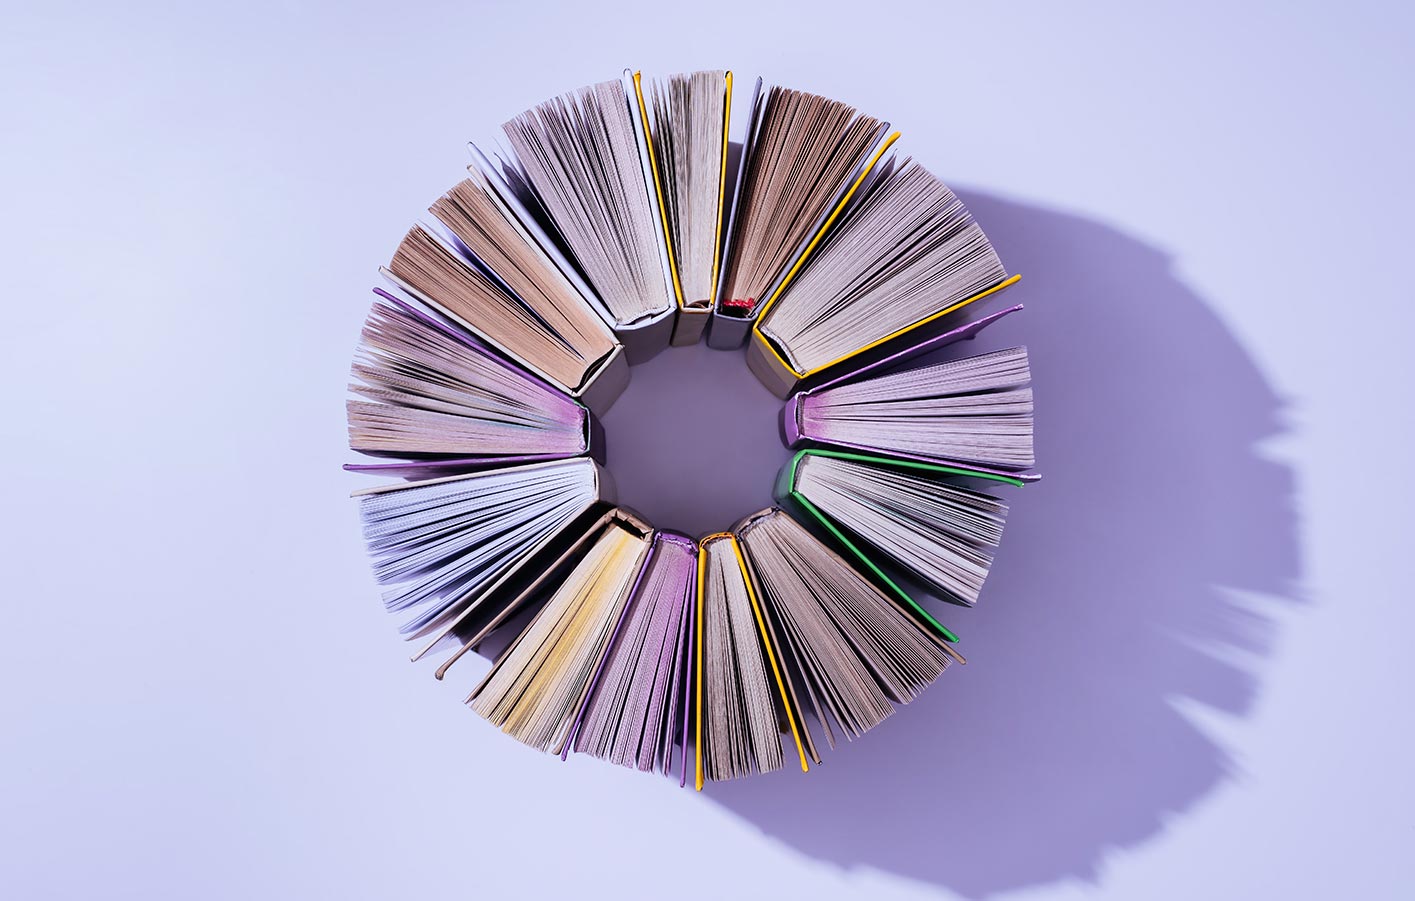 Bücher gereiht in einem Kreis - von oben dargestellt